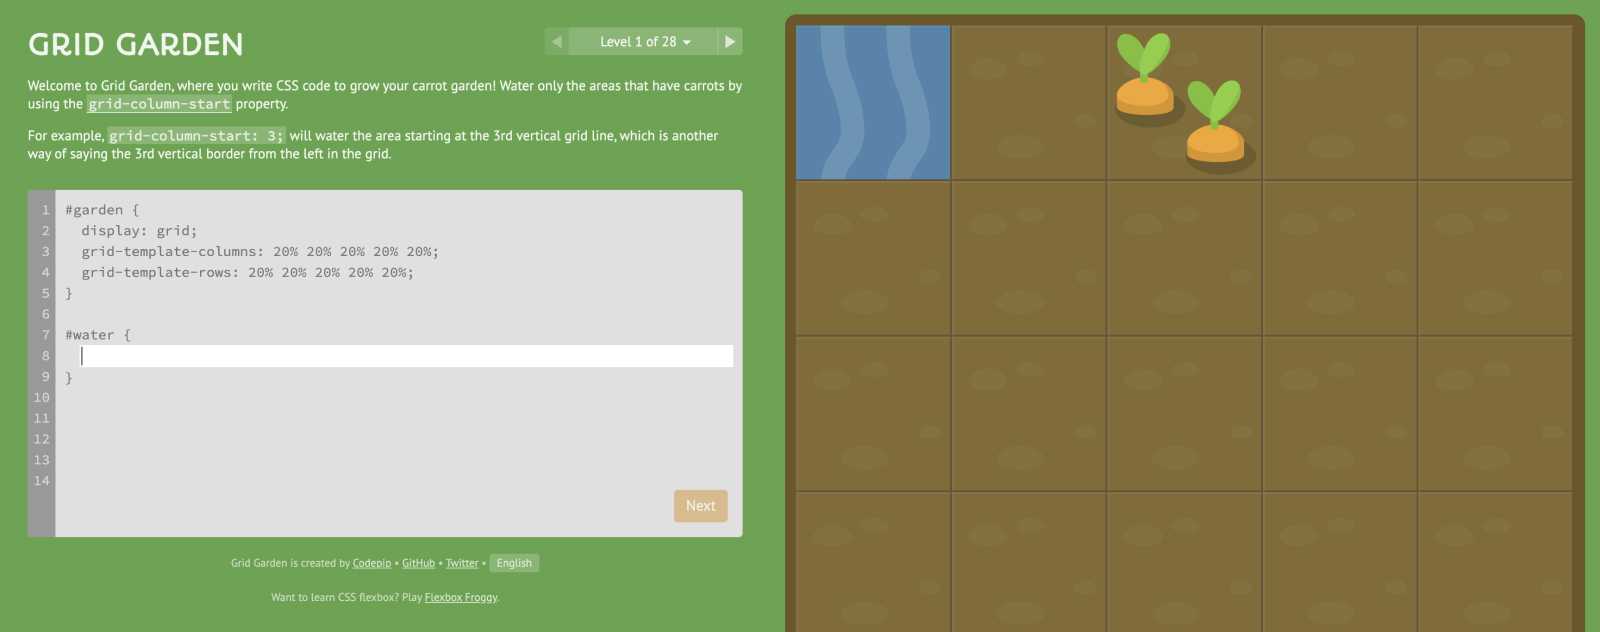 Grid garden jeu pour apprendre le CSS